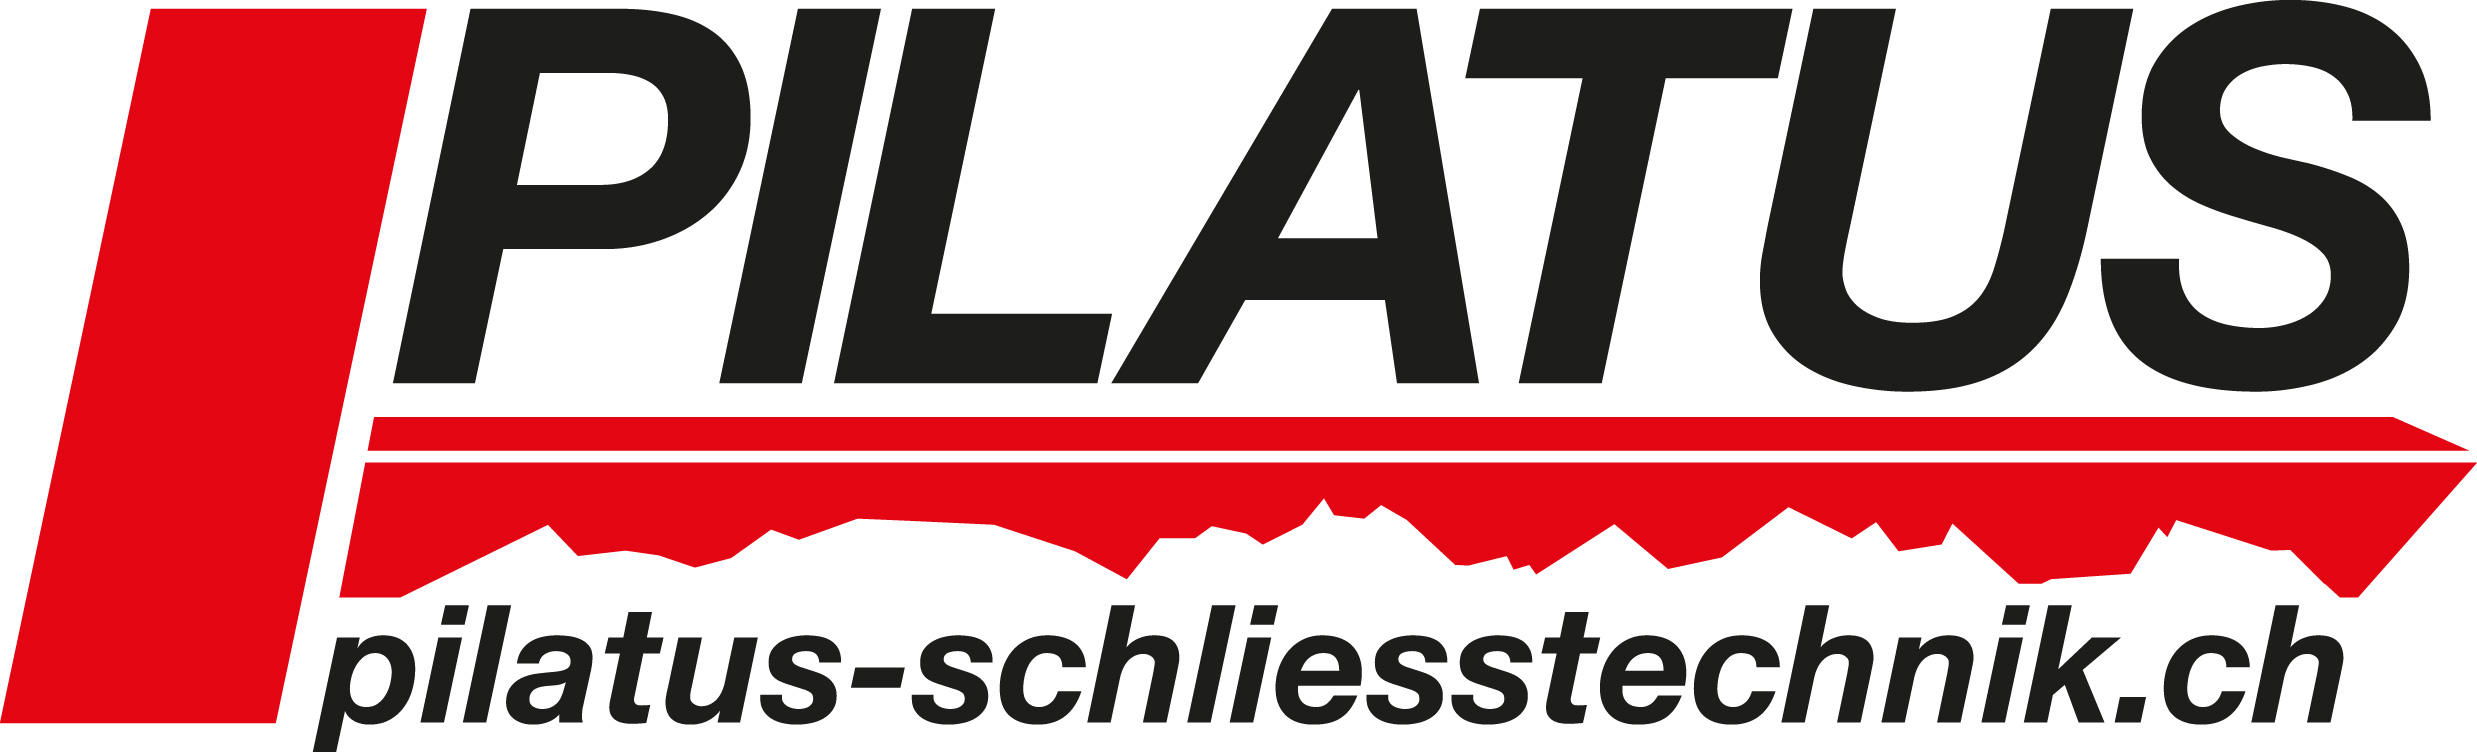 Bilder Pilatus Schliesstechnik GmbH